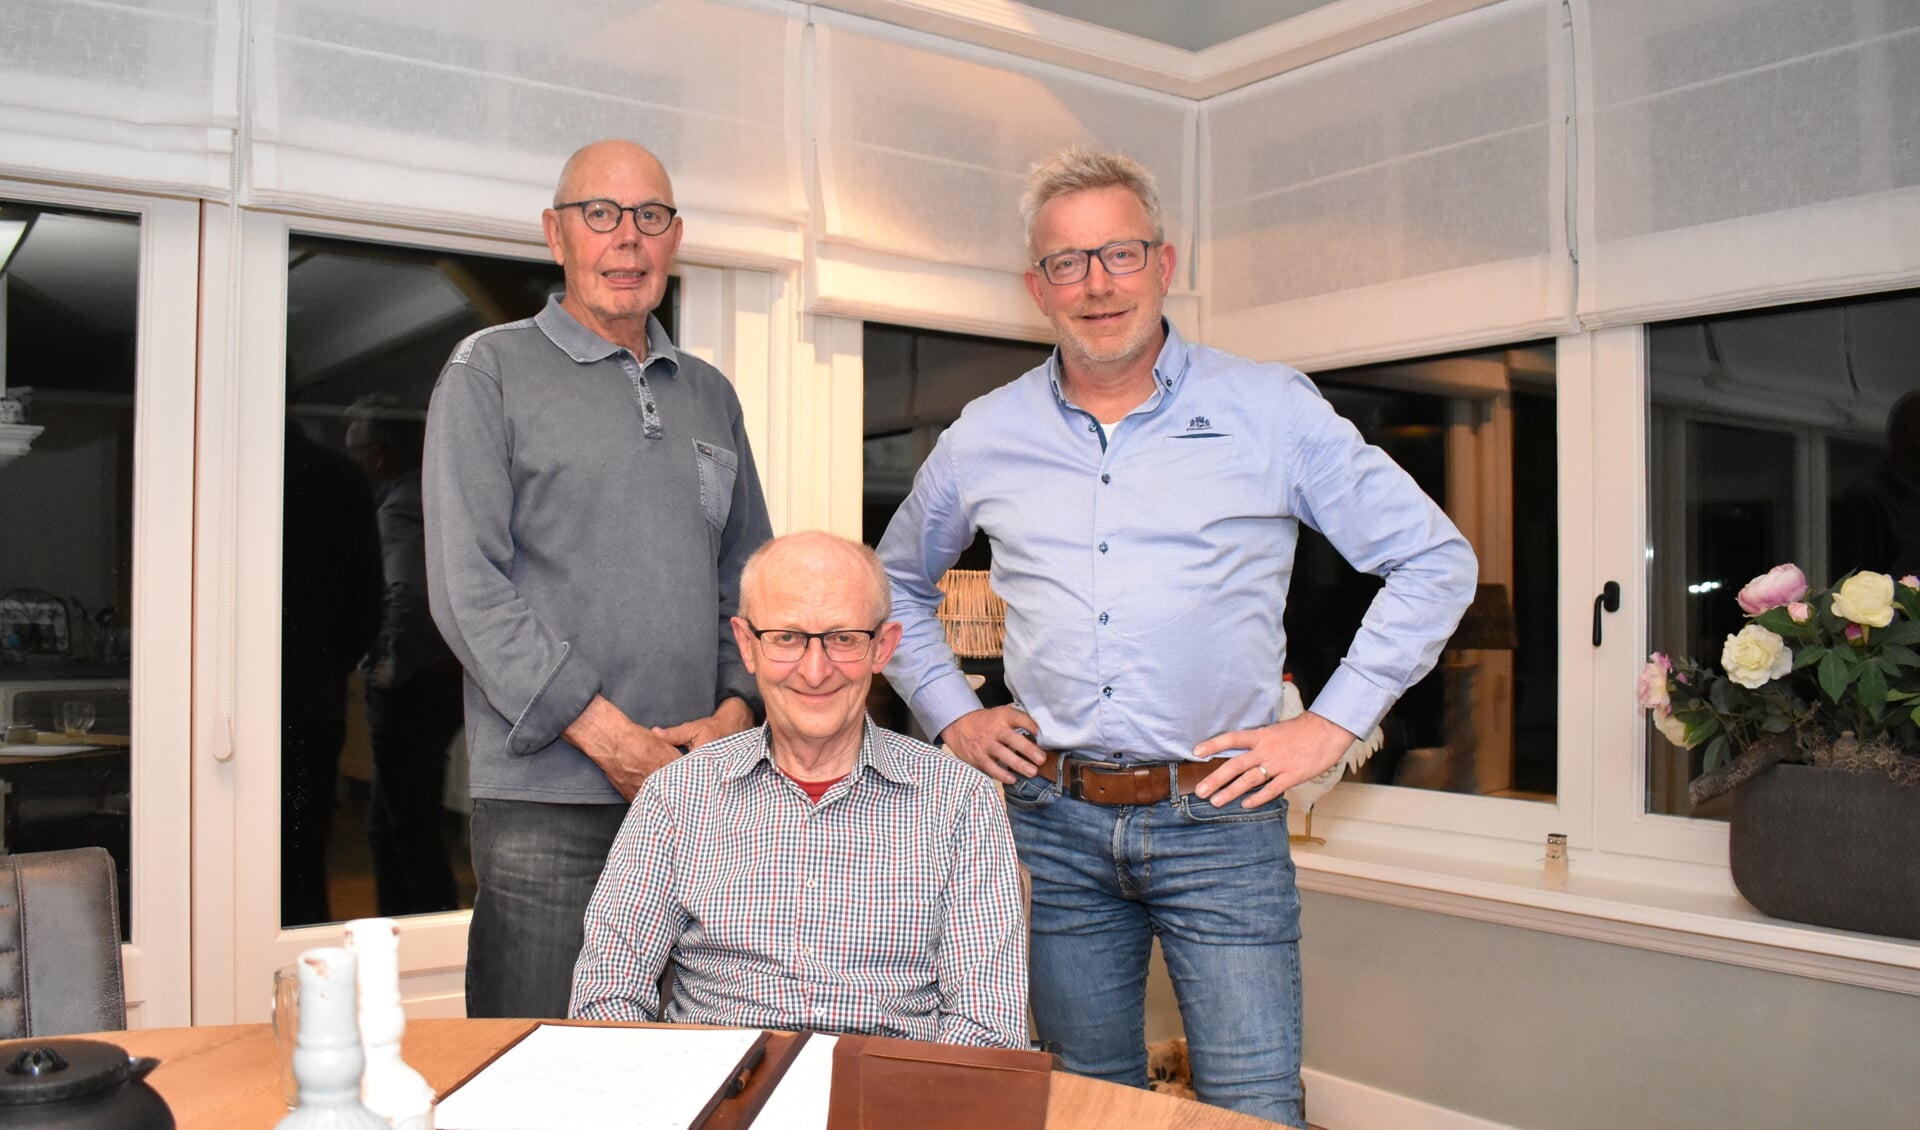 Ies Hartog (links), Adrie Kom (midden) en Kees Lambert zetten zich in voor de leefbaarheid in Oude-Tonge.